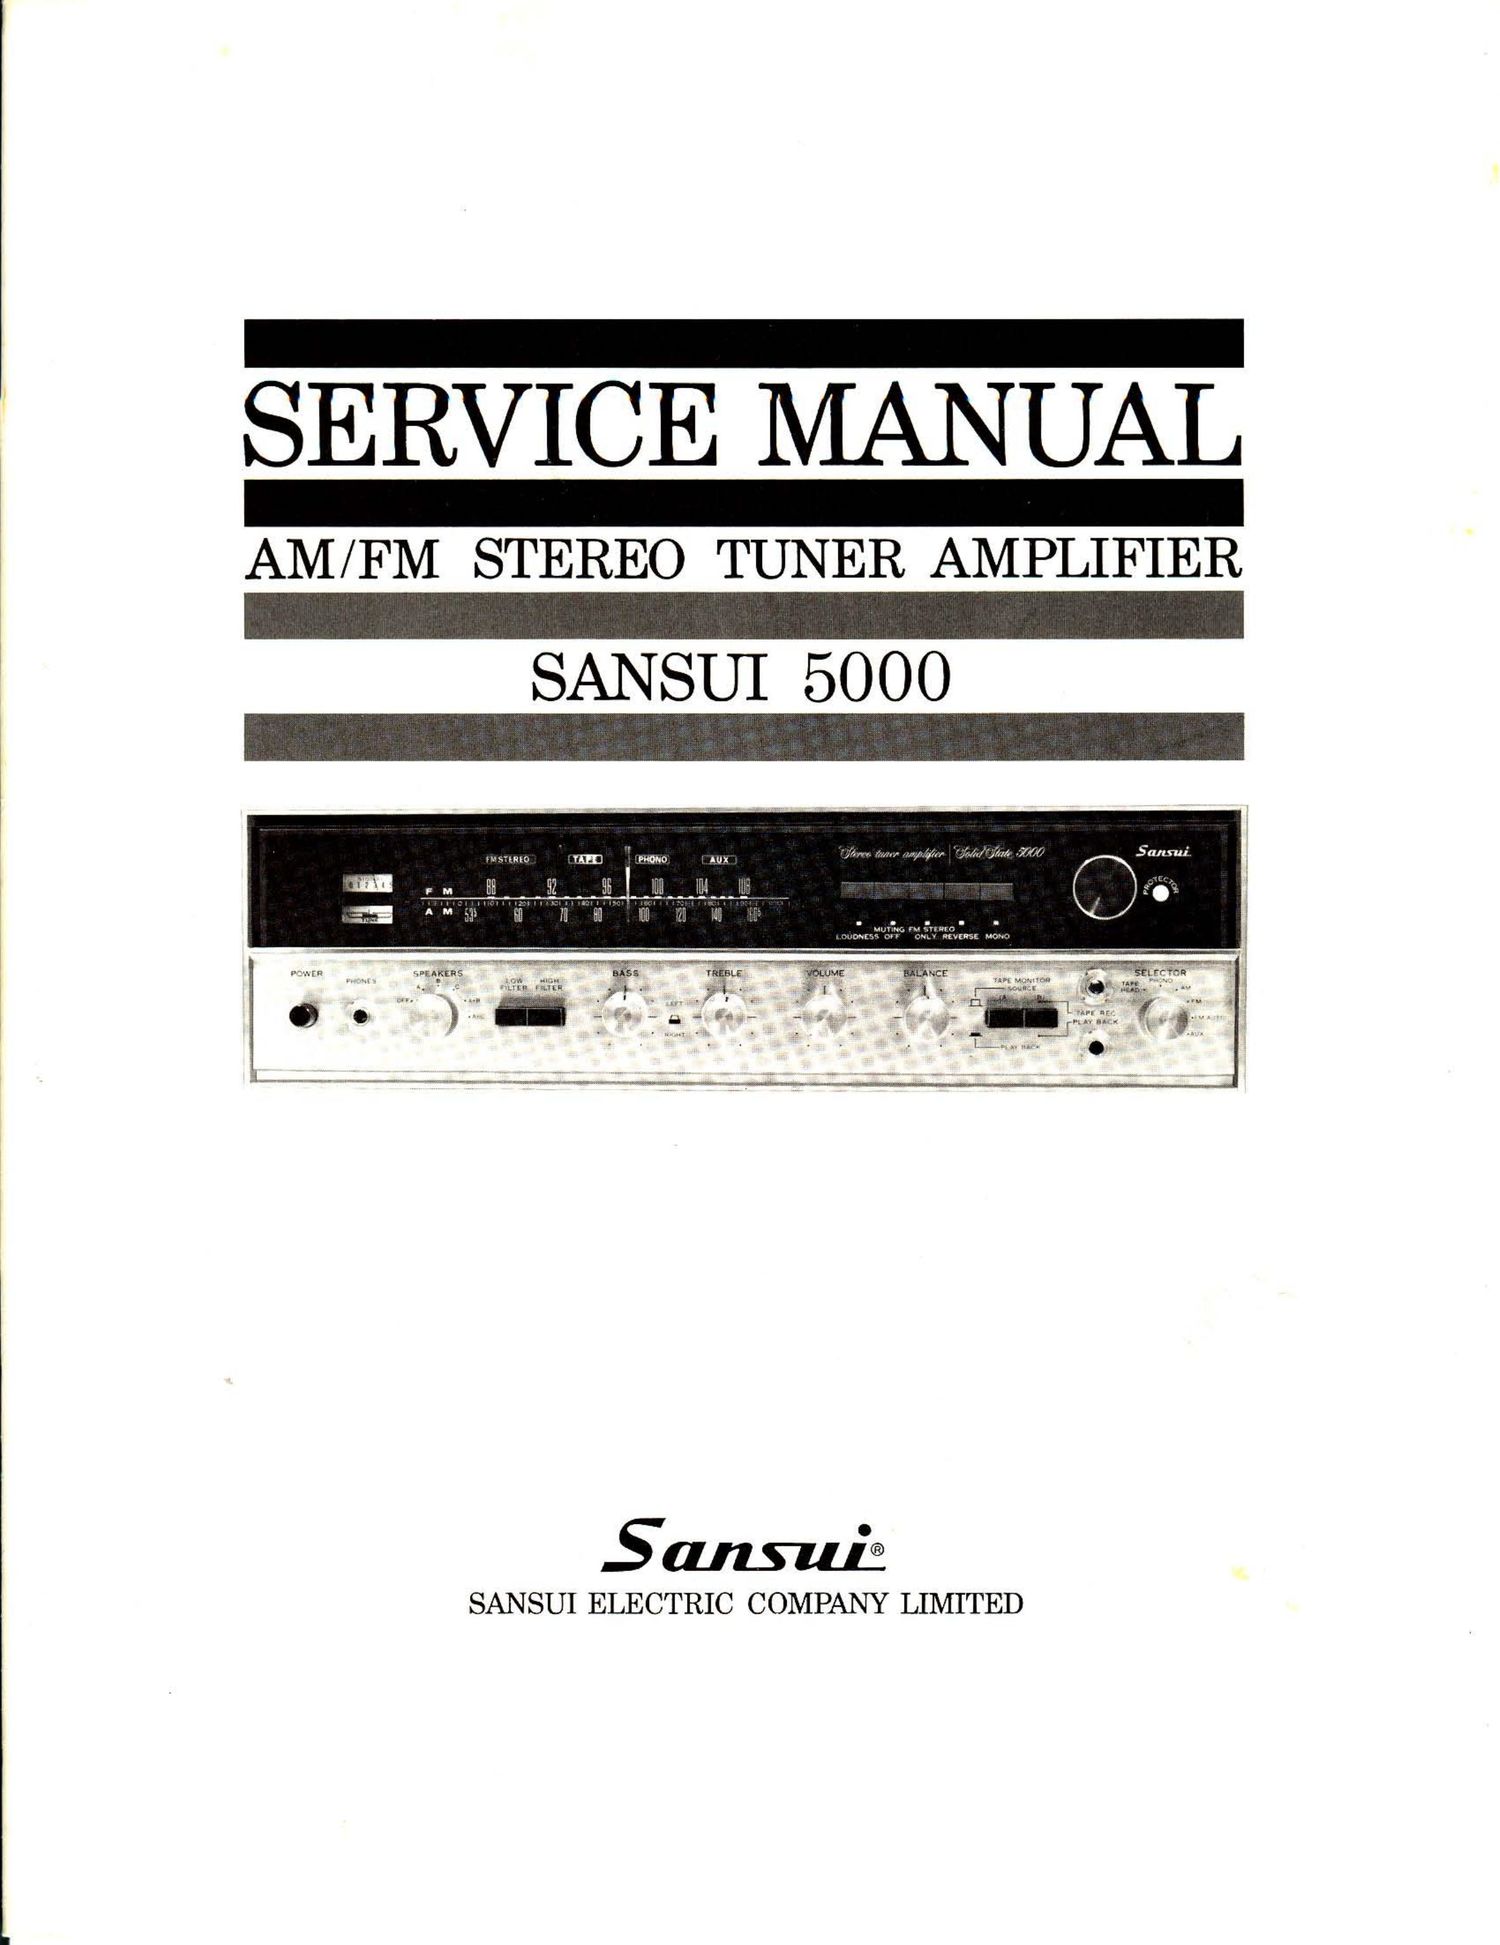 Sansui 5000 Service Manual